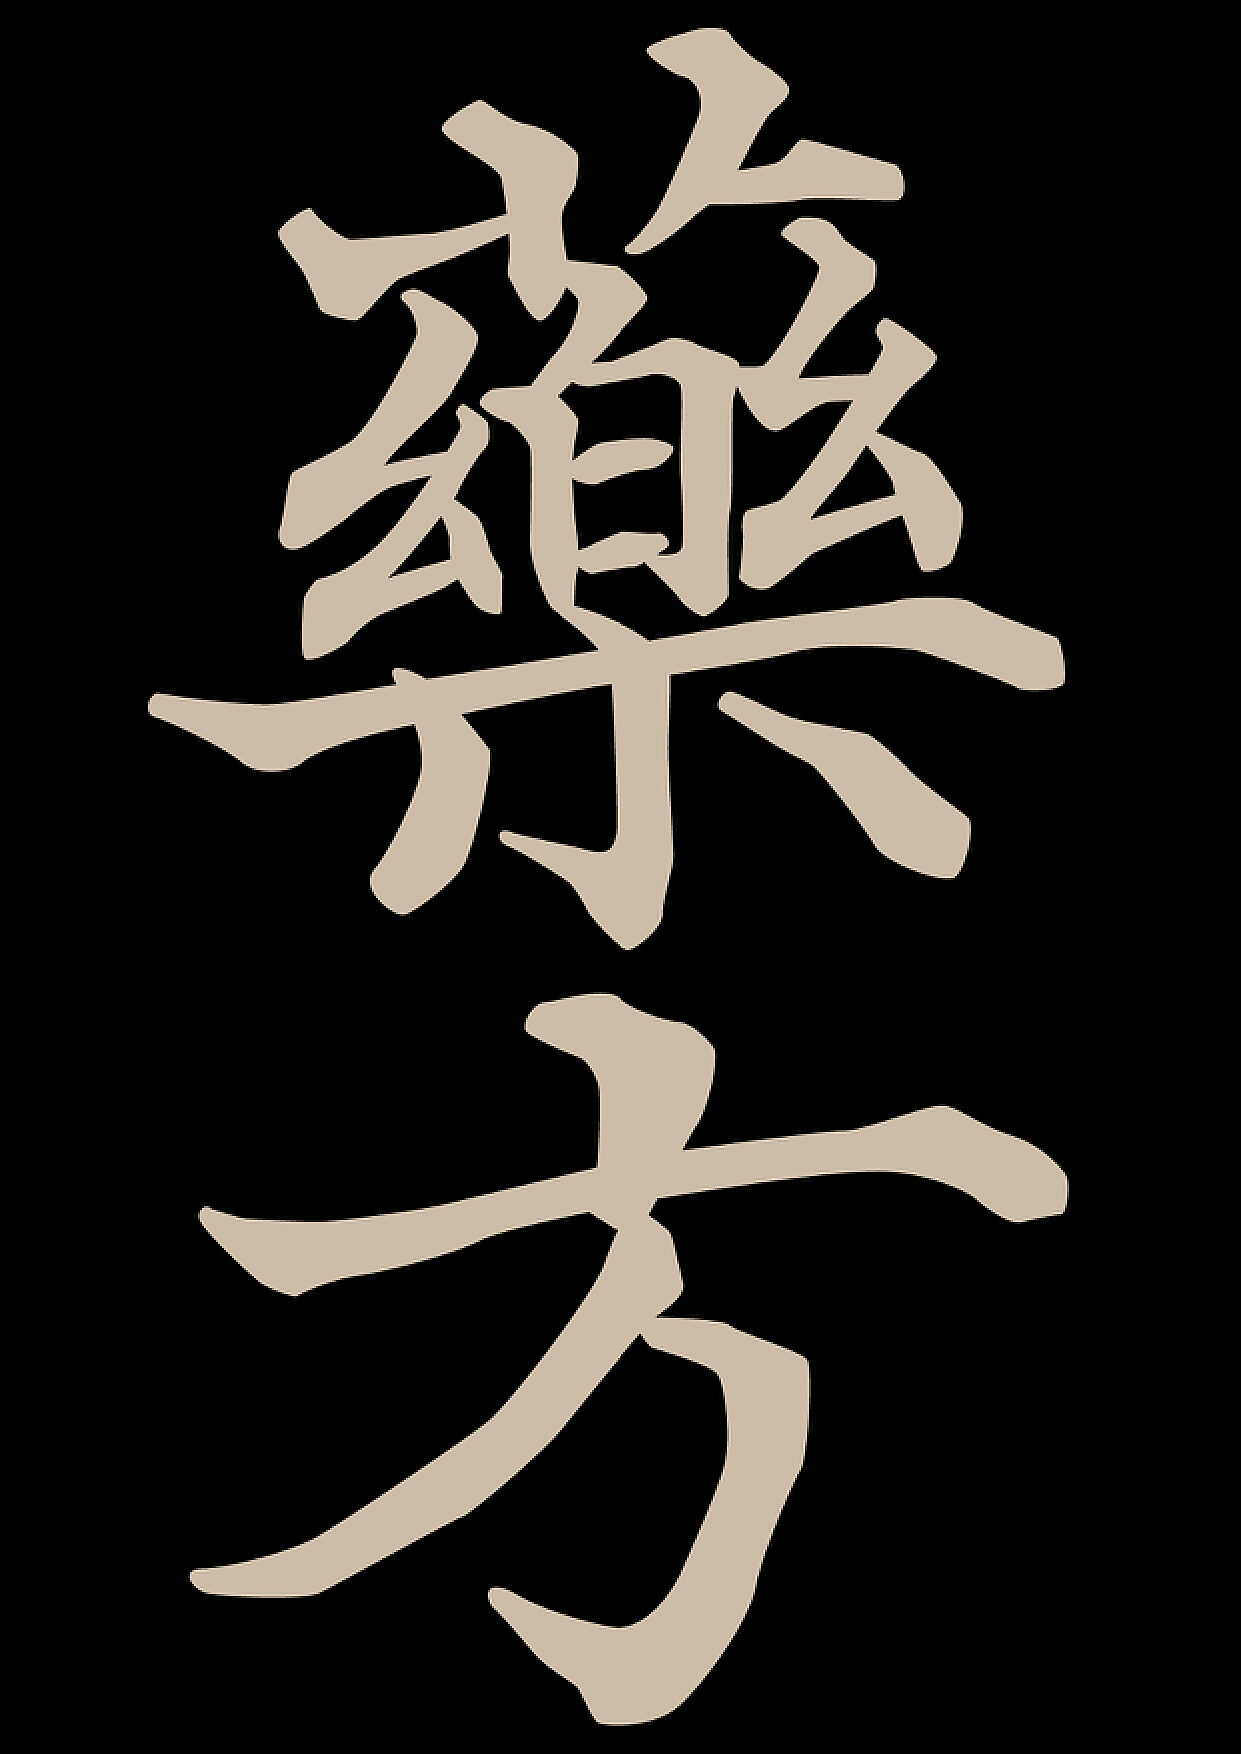 Aa青墨古韵手书正版字体下载 - 正版中文字体下载尽在字体家